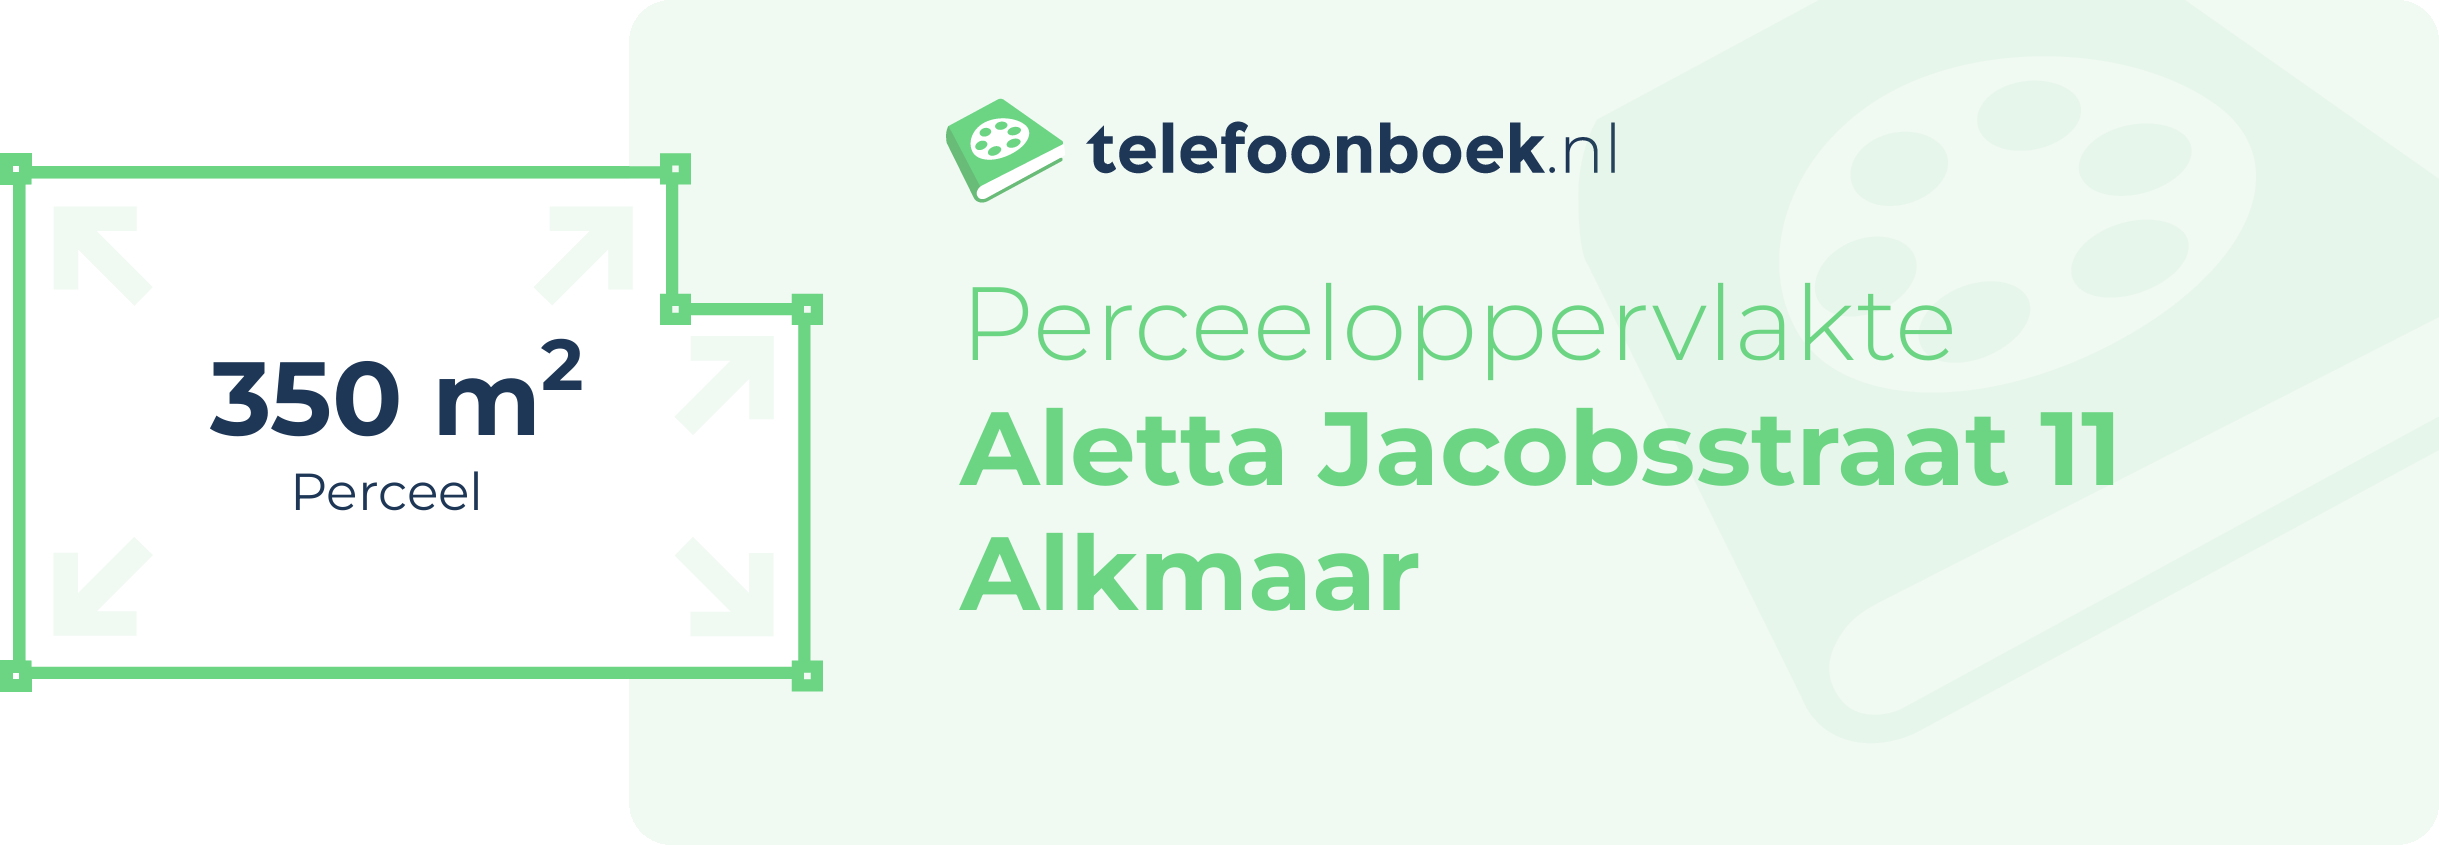 Perceeloppervlakte Aletta Jacobsstraat 11 Alkmaar